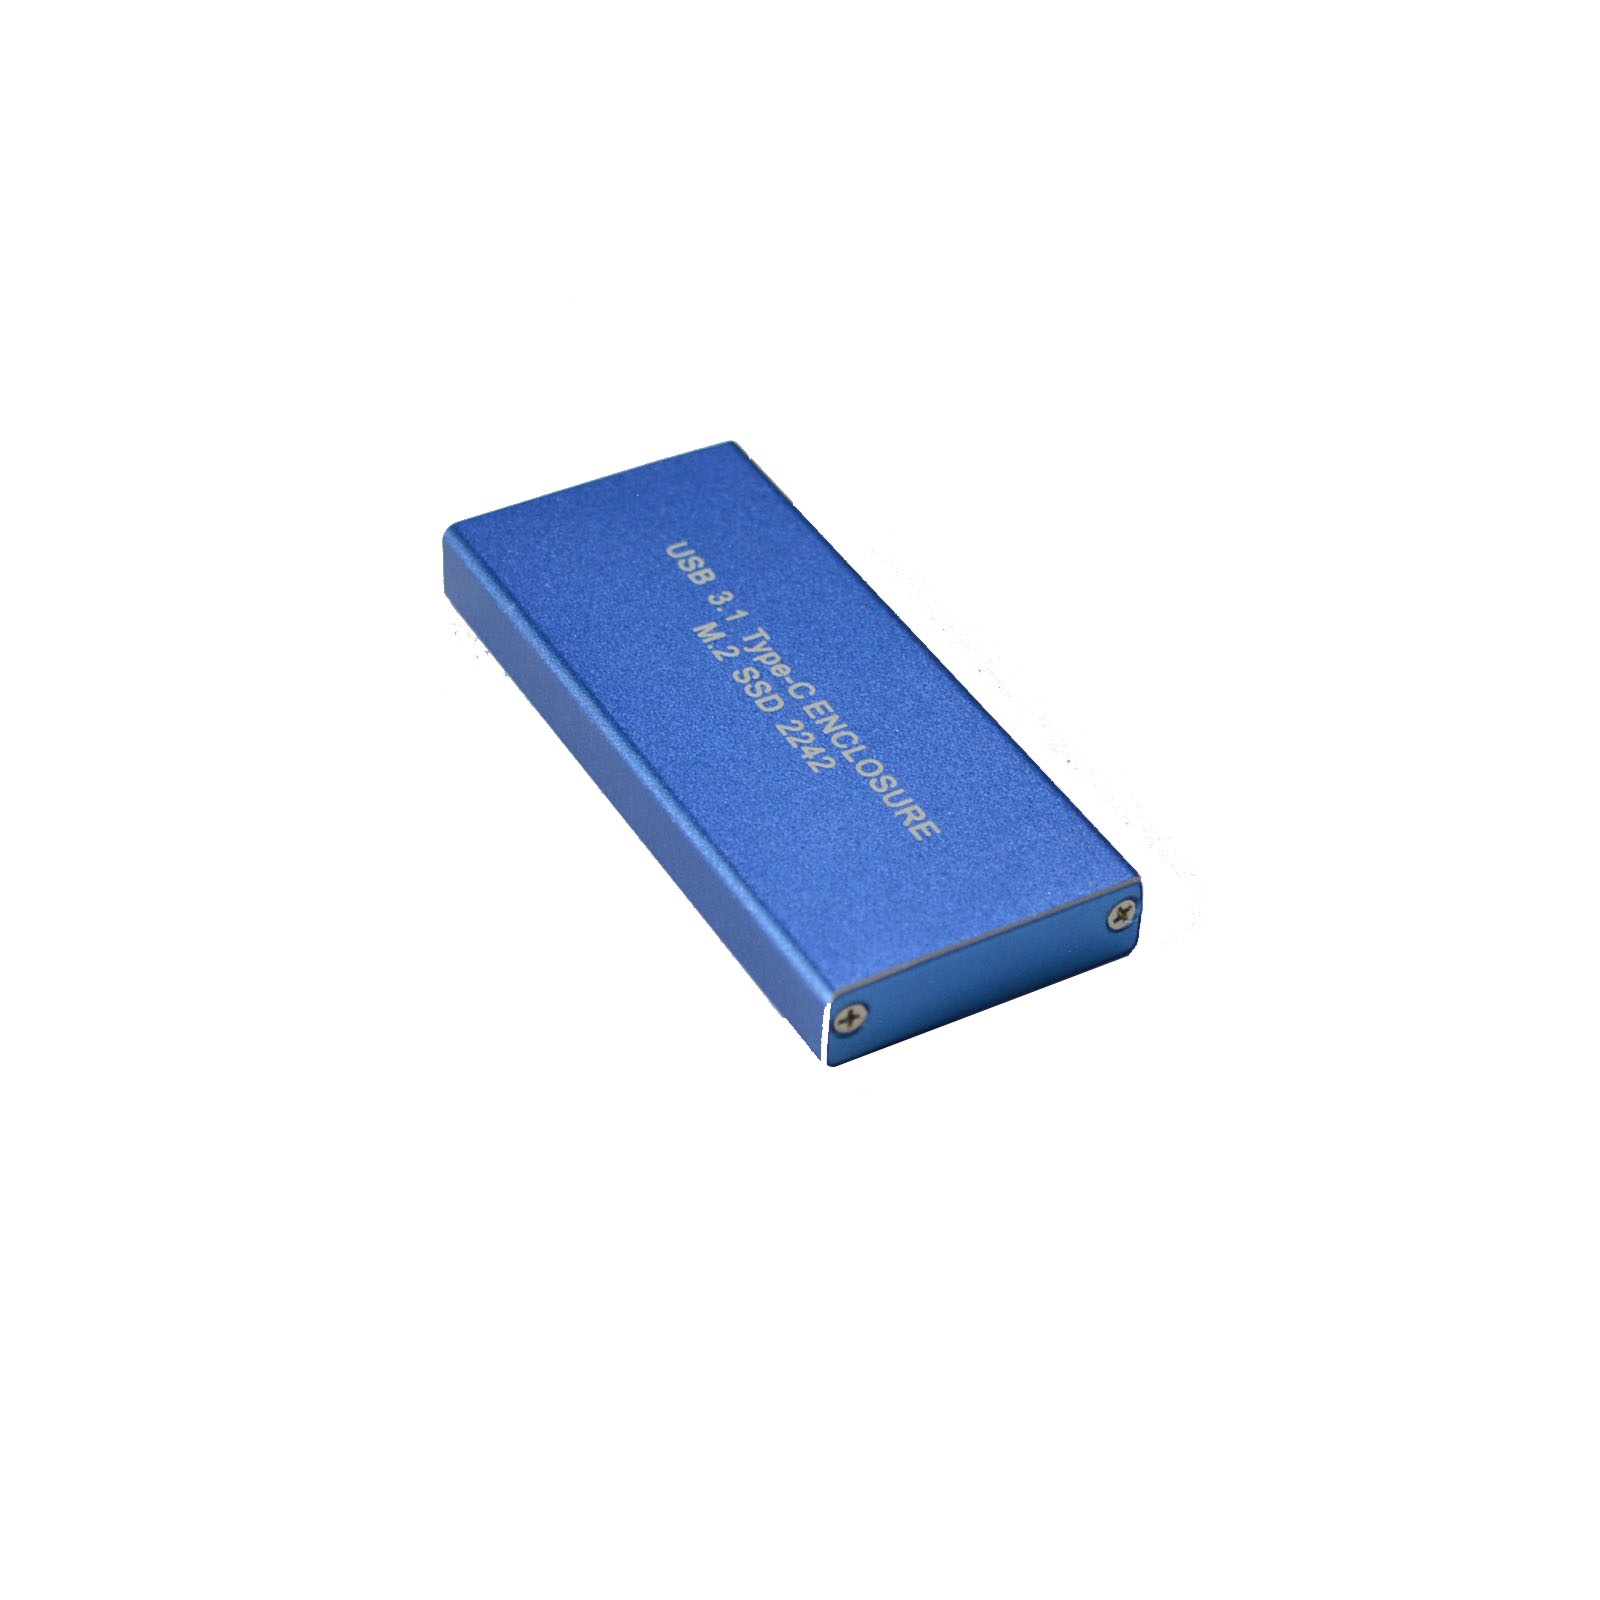 SSD External Case